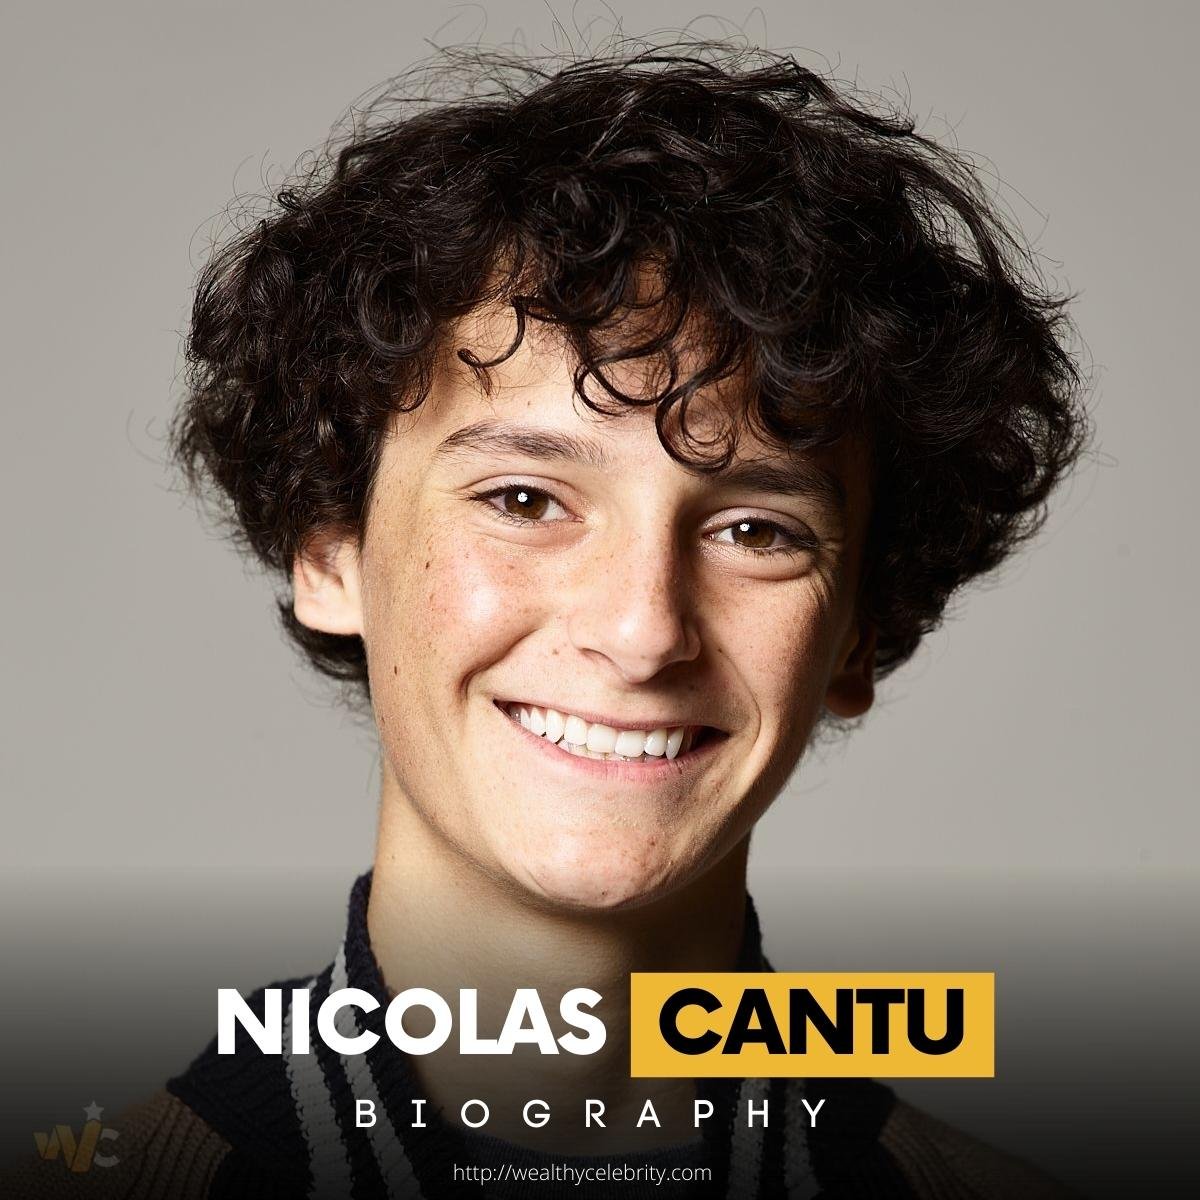 Nicolas Cantu